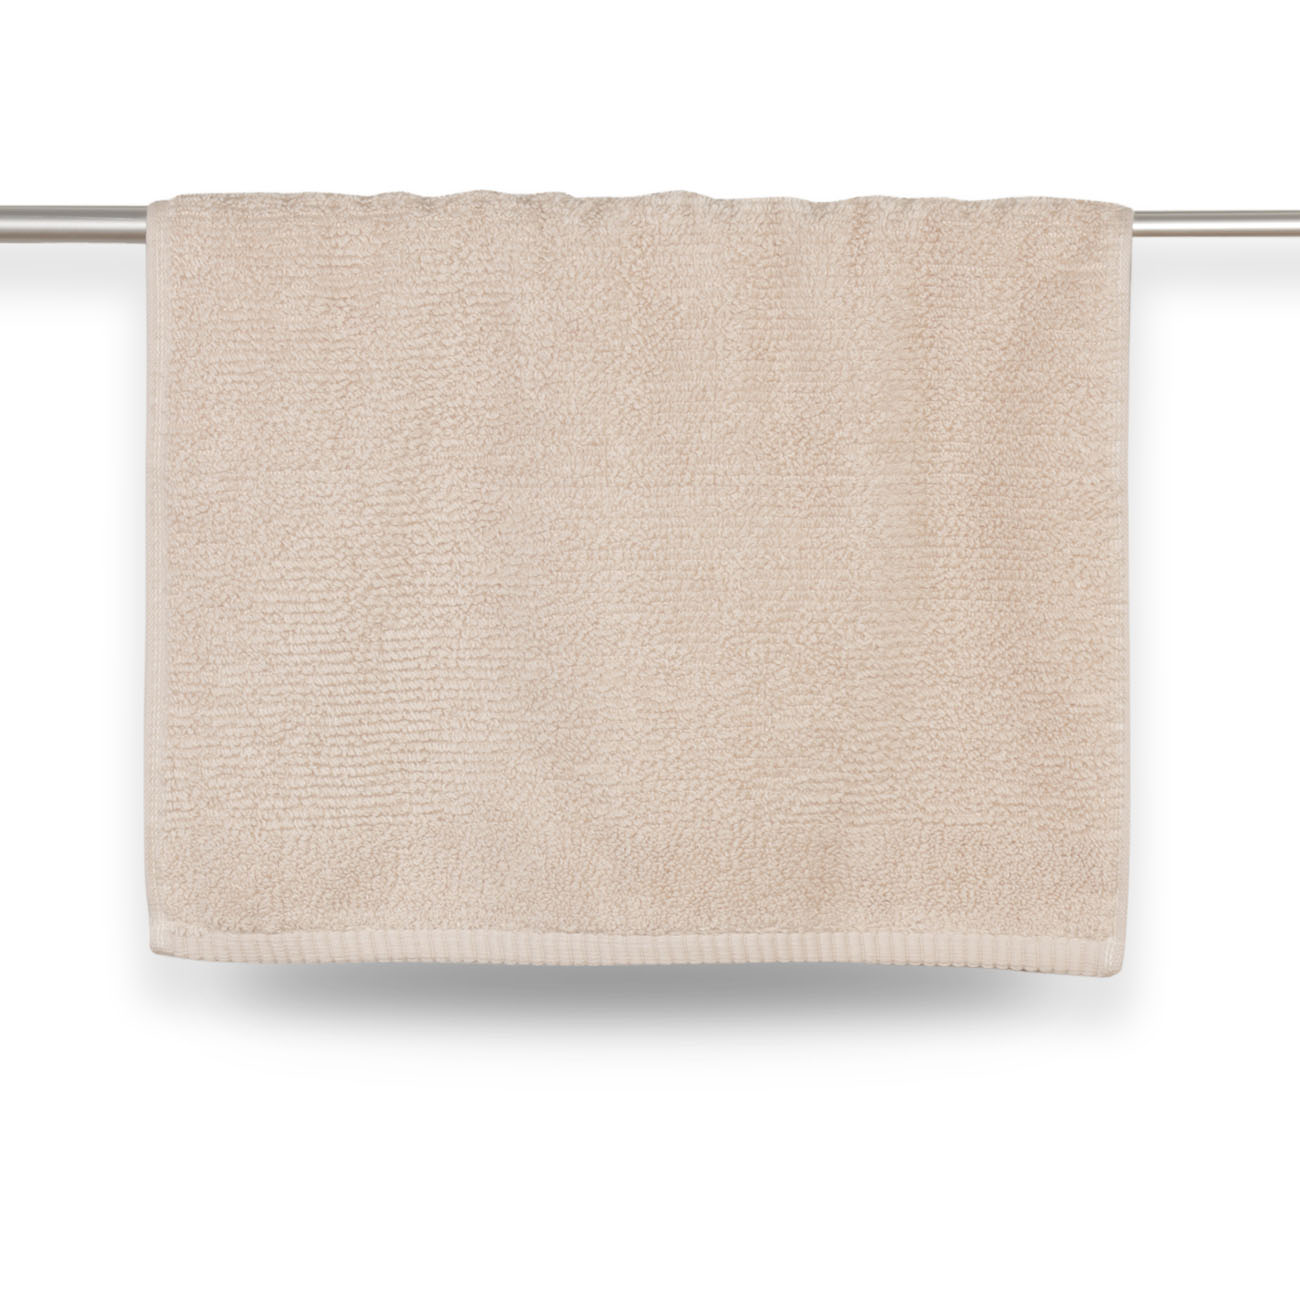 Towel, 40x60 cm, cotton, beige, Terry cotton изображение № 2